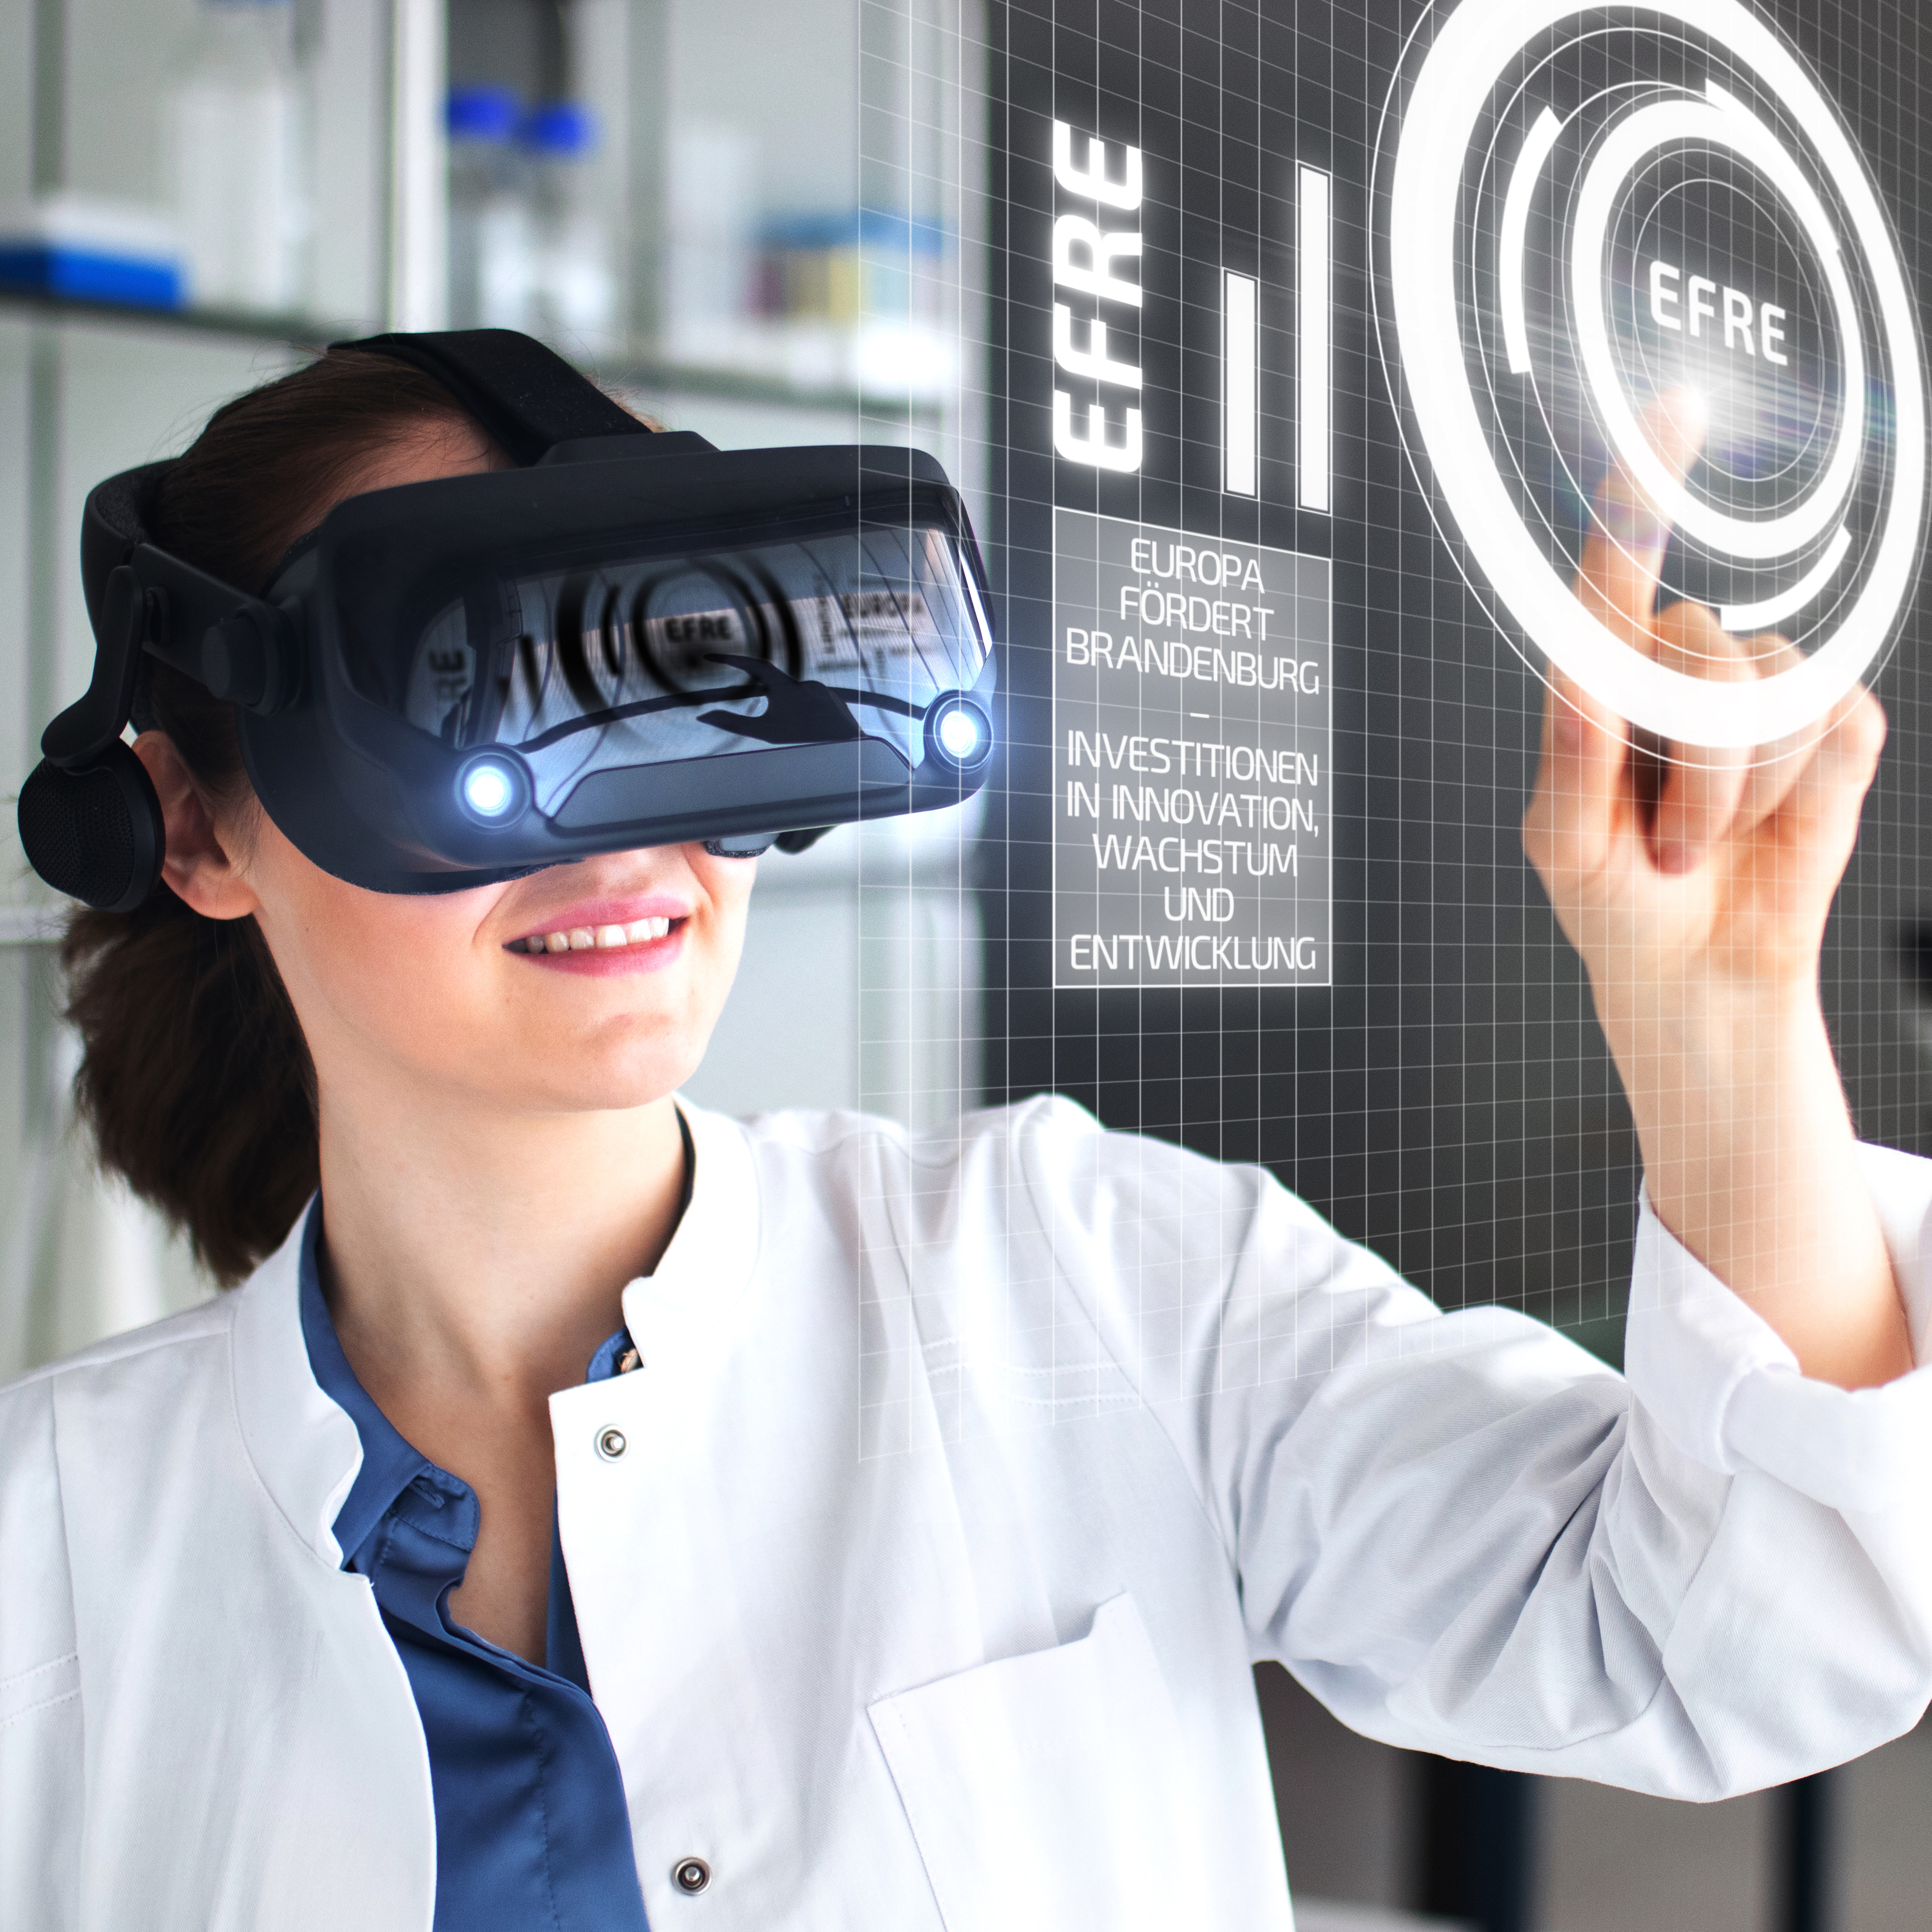 Bild von einer Frau mit VR-Brille, die auf eine digitale Grafik mit dem Schriftzug EFRE zeigt